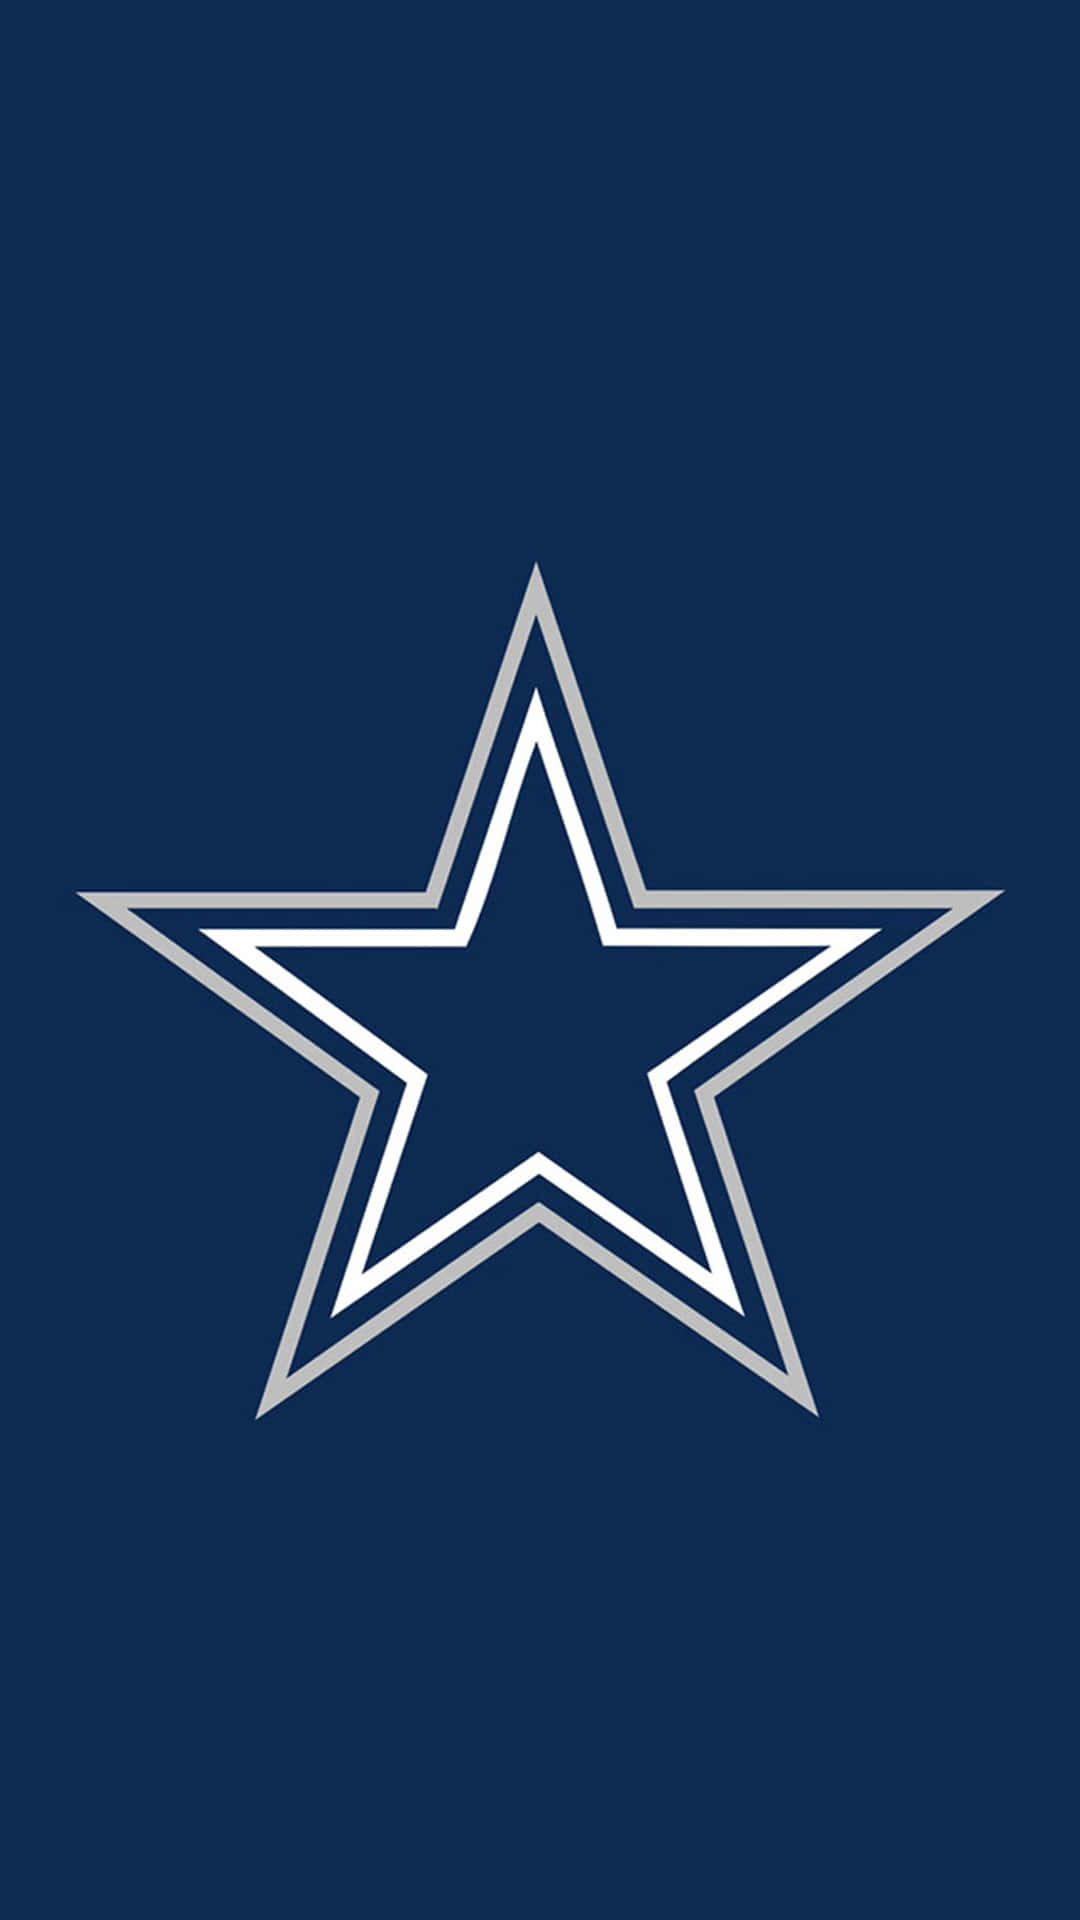 Montacon Estilo Con El Iphone De Los Dallas Cowboys. Fondo de pantalla